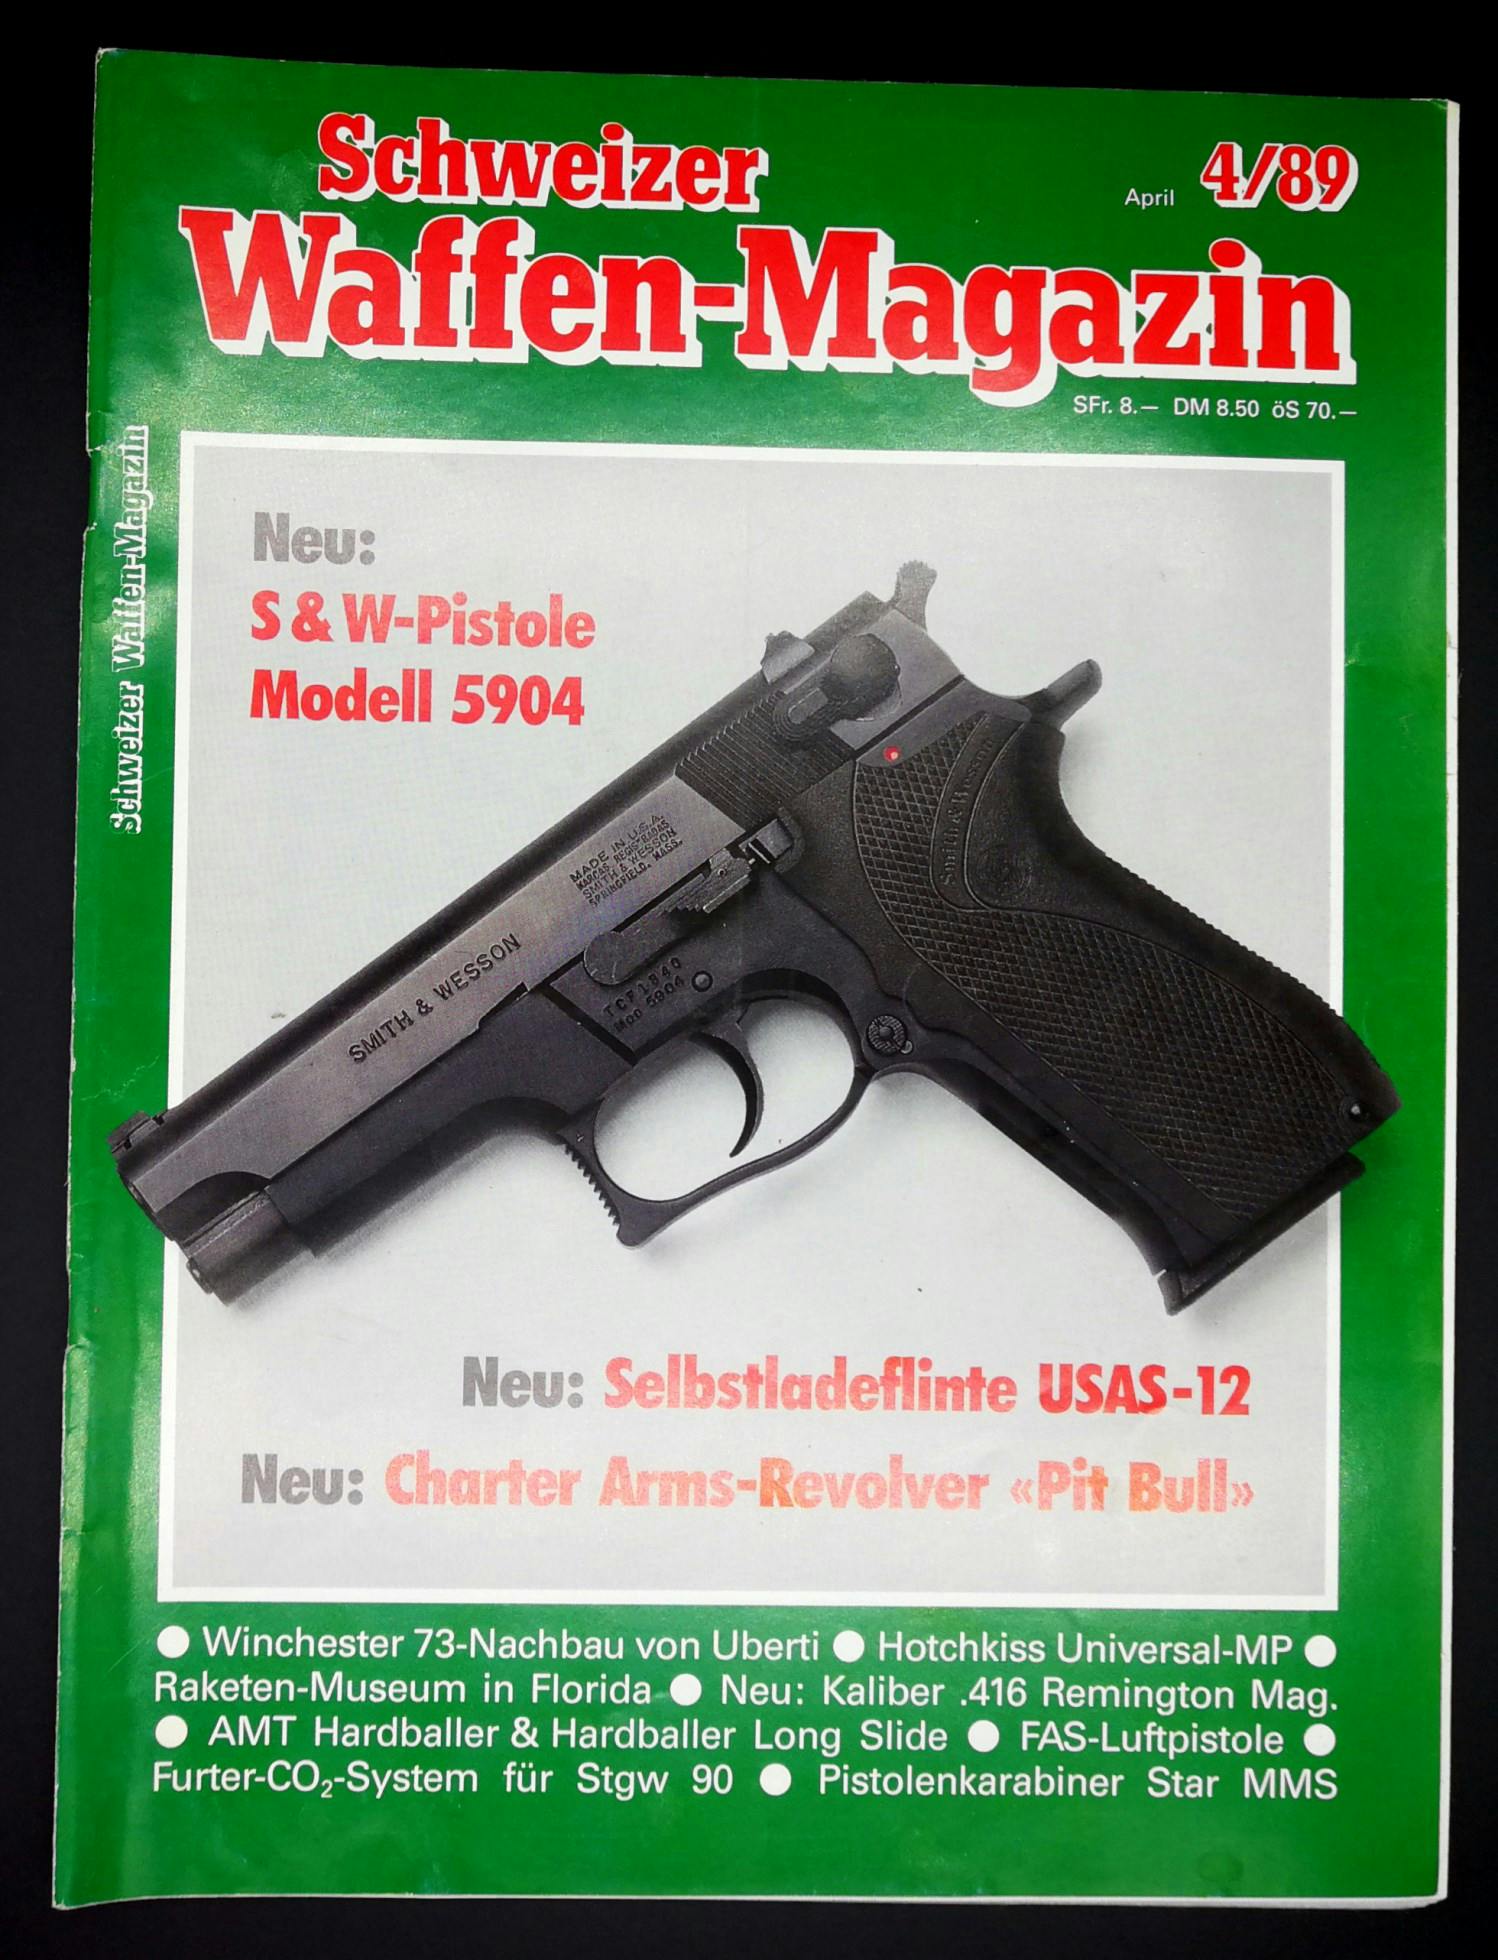 Smith&Wesson 5904, eine weniger bekannte 45ACP-Pistole.
